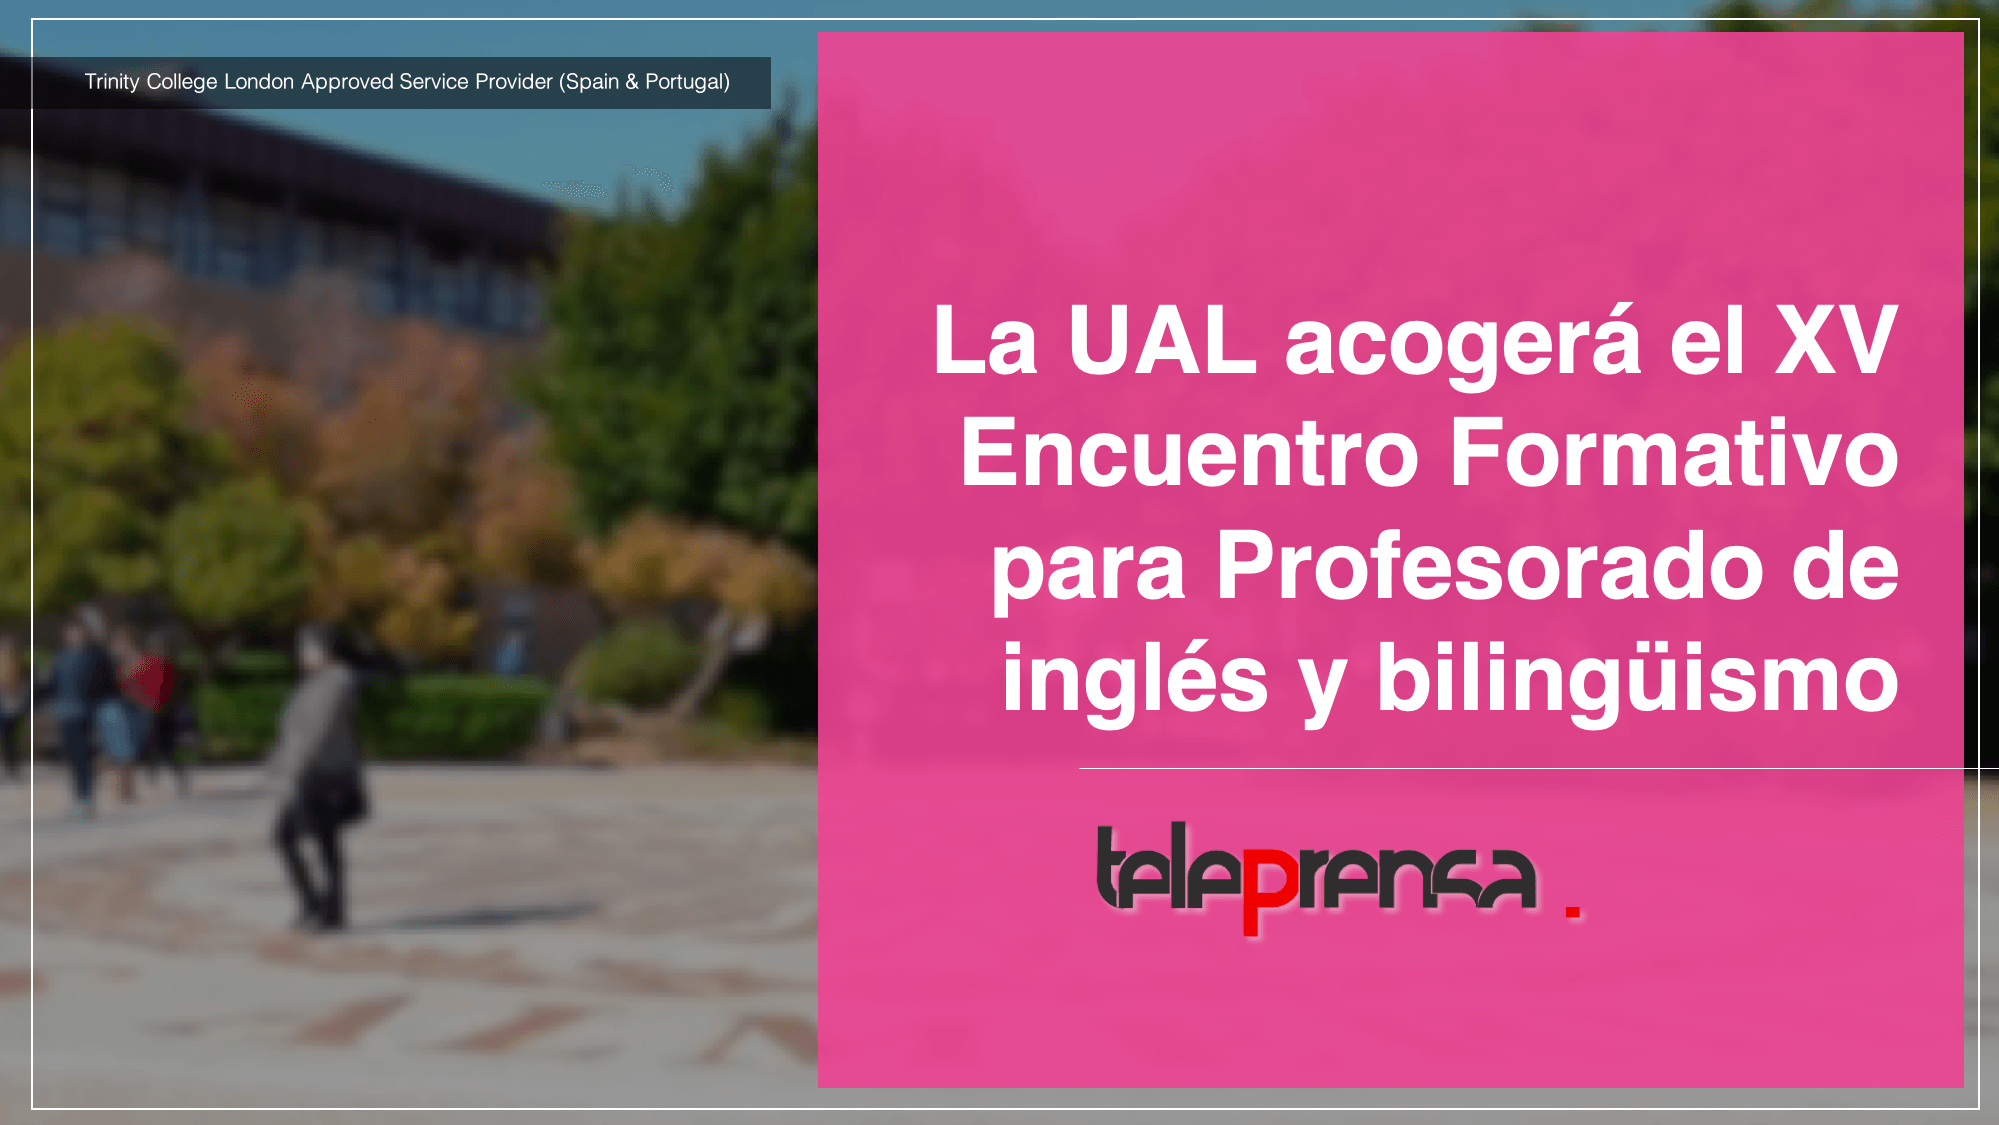 La UAL acogerá el XV Encuentro Formativo para Profesorado de inglés y bilingüismo